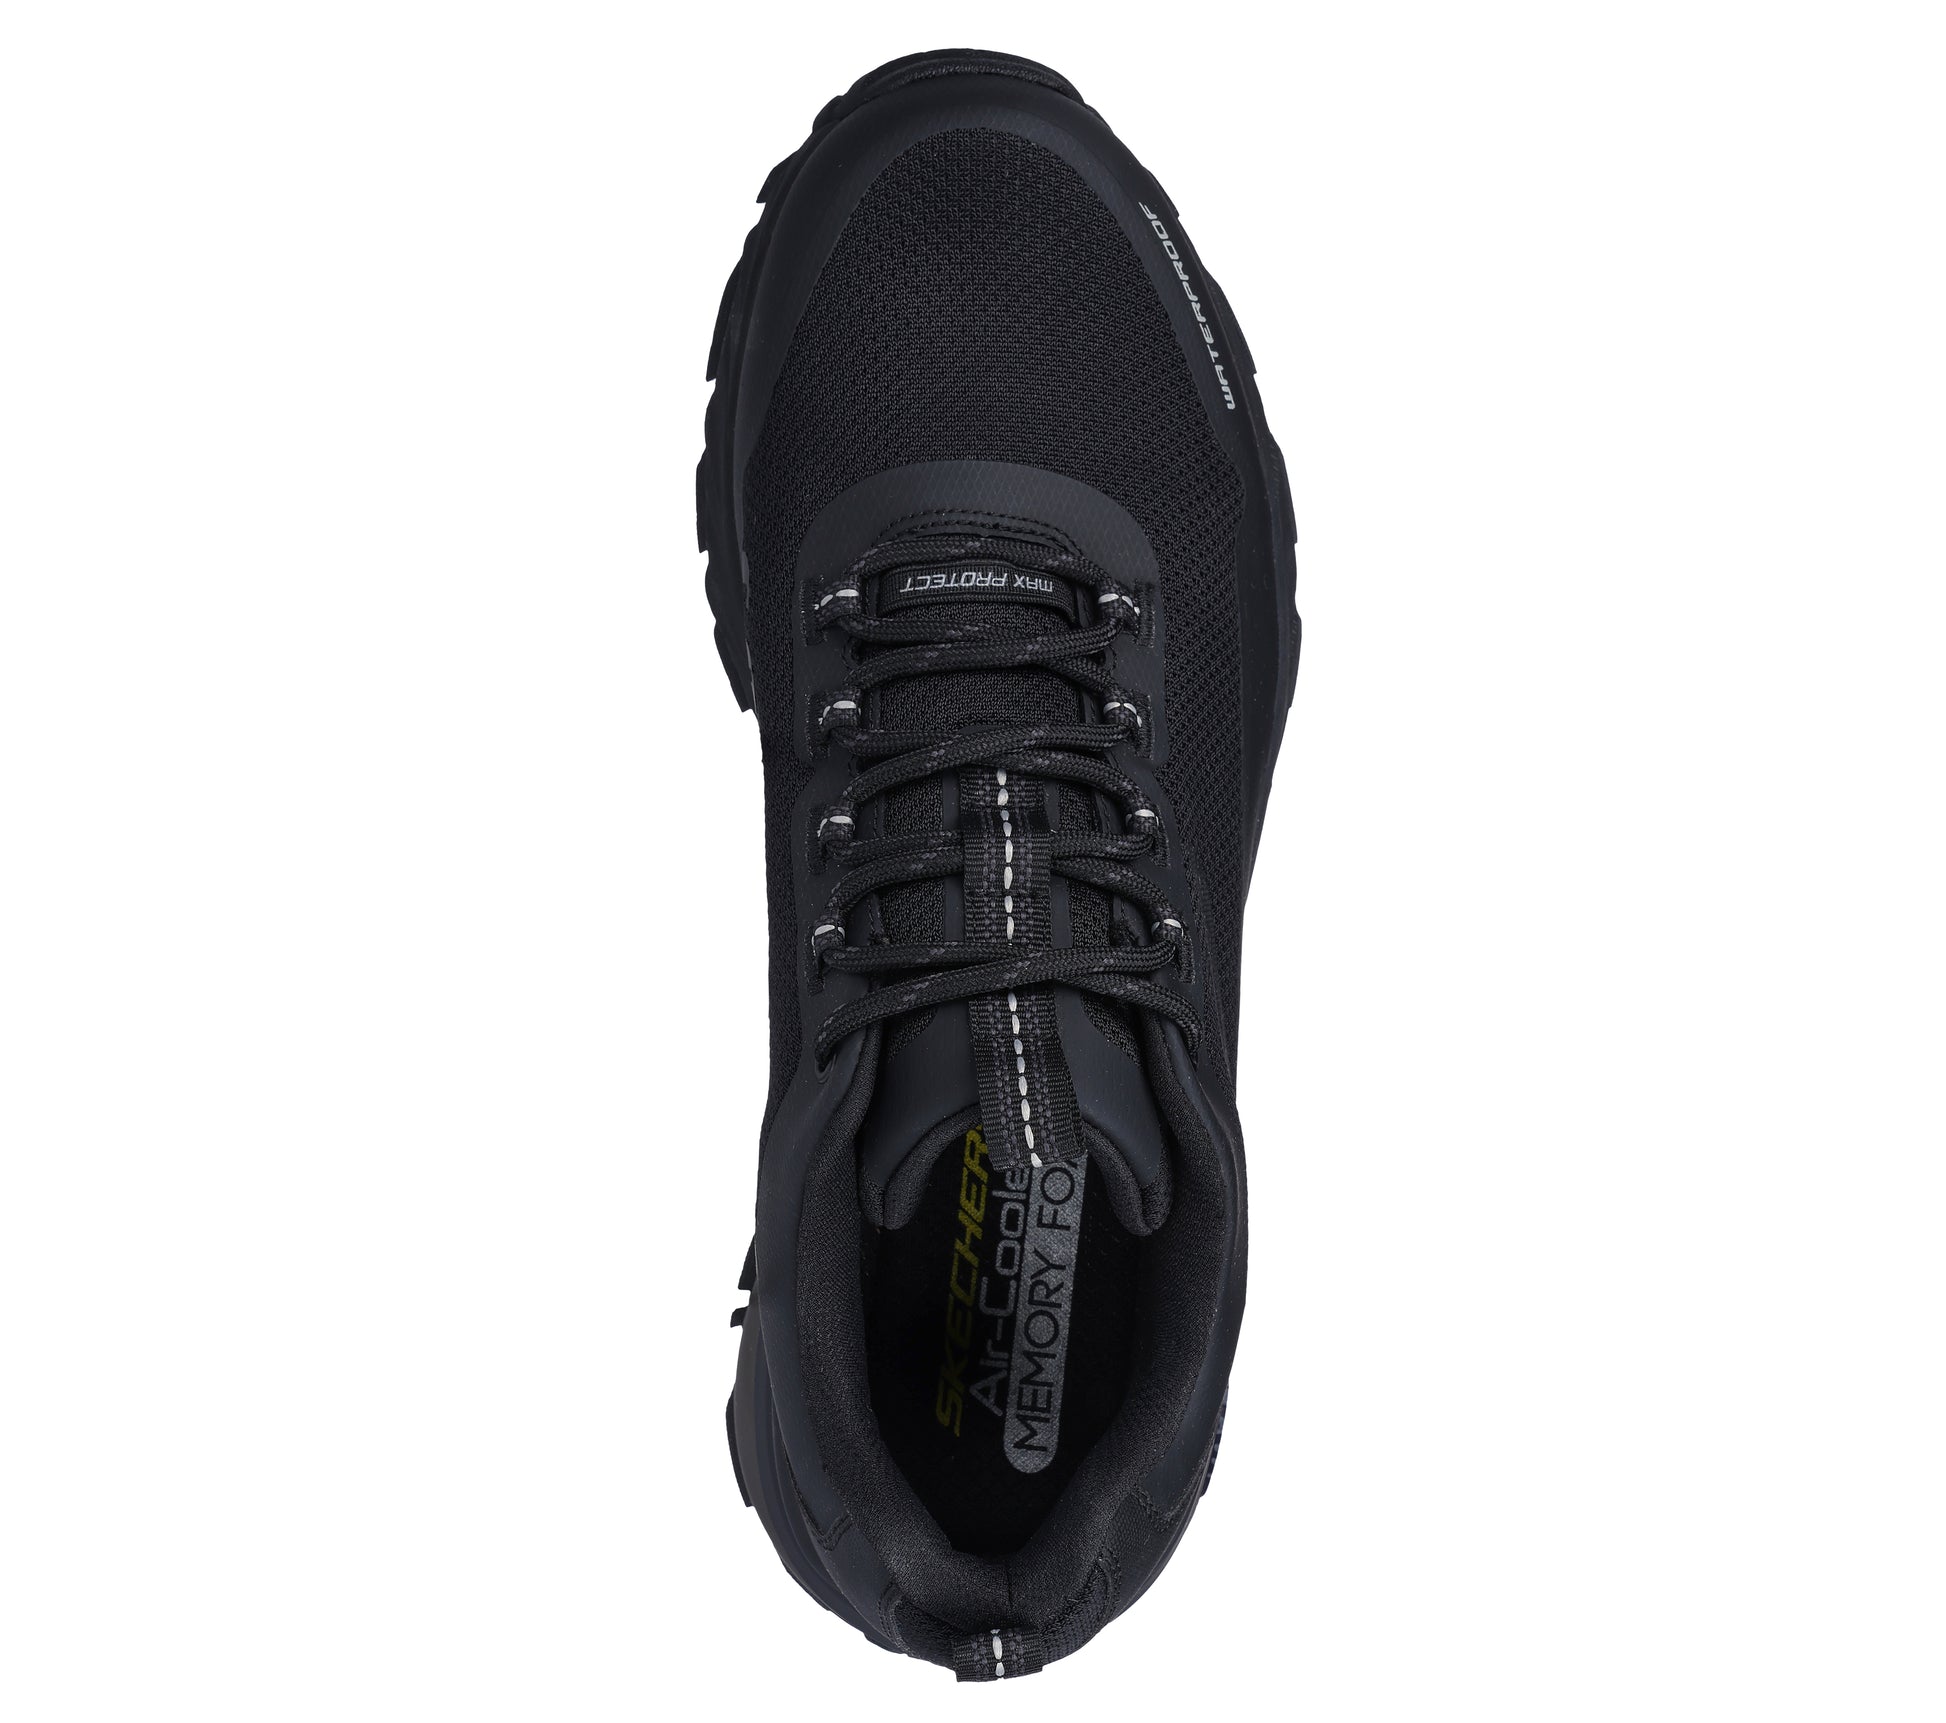 נעלי ספורט לגברים Vapor Foam בצבע שחור